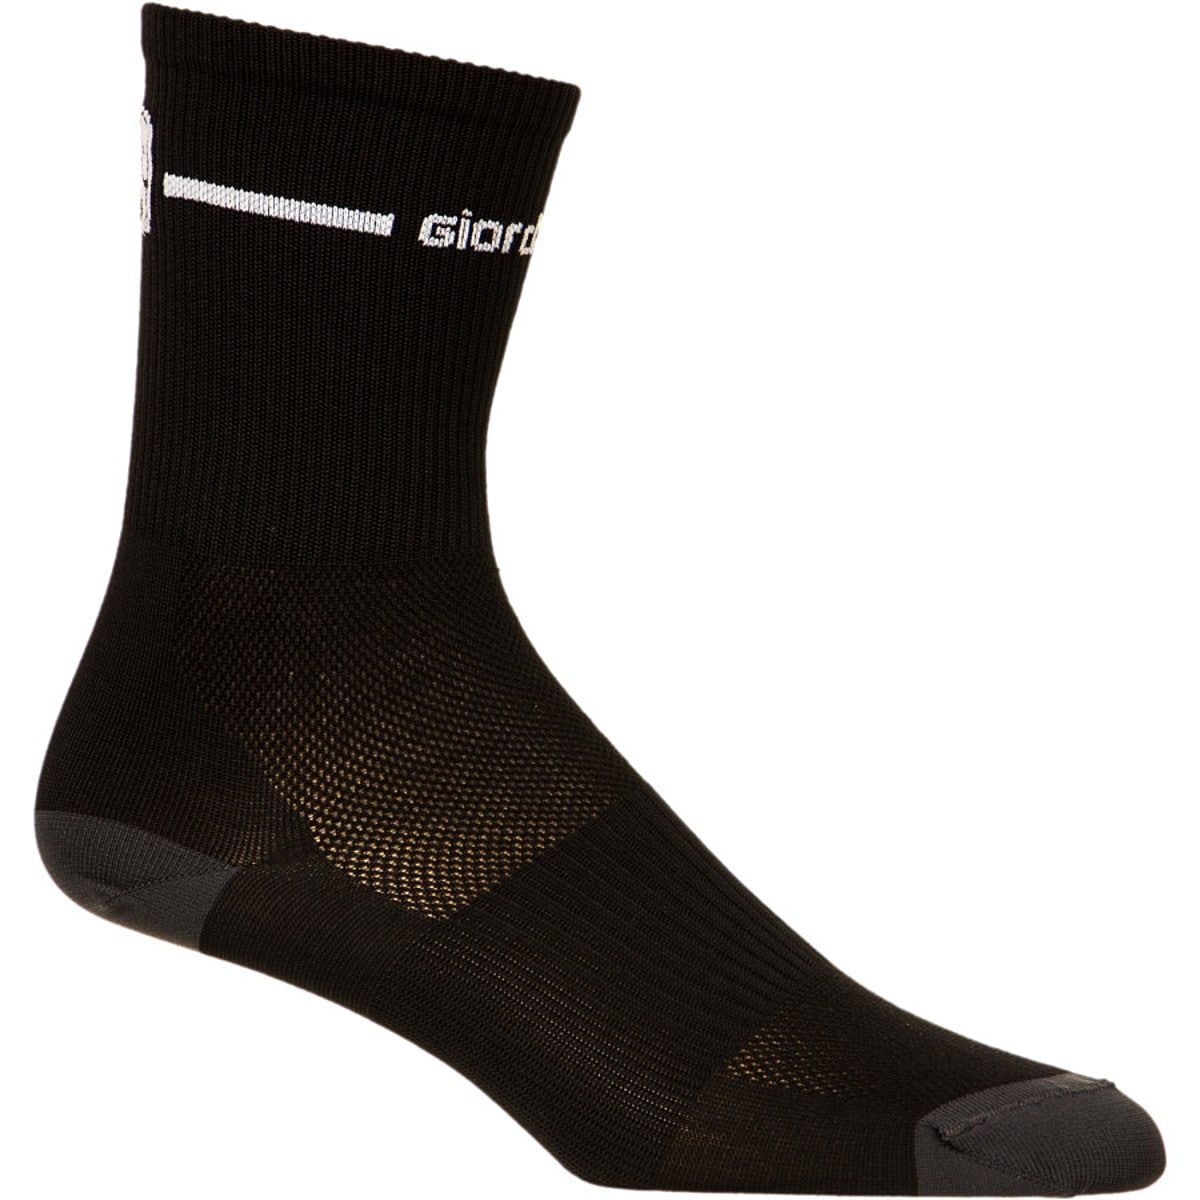 Giordana Trade Tall Cuff Socks - Men's